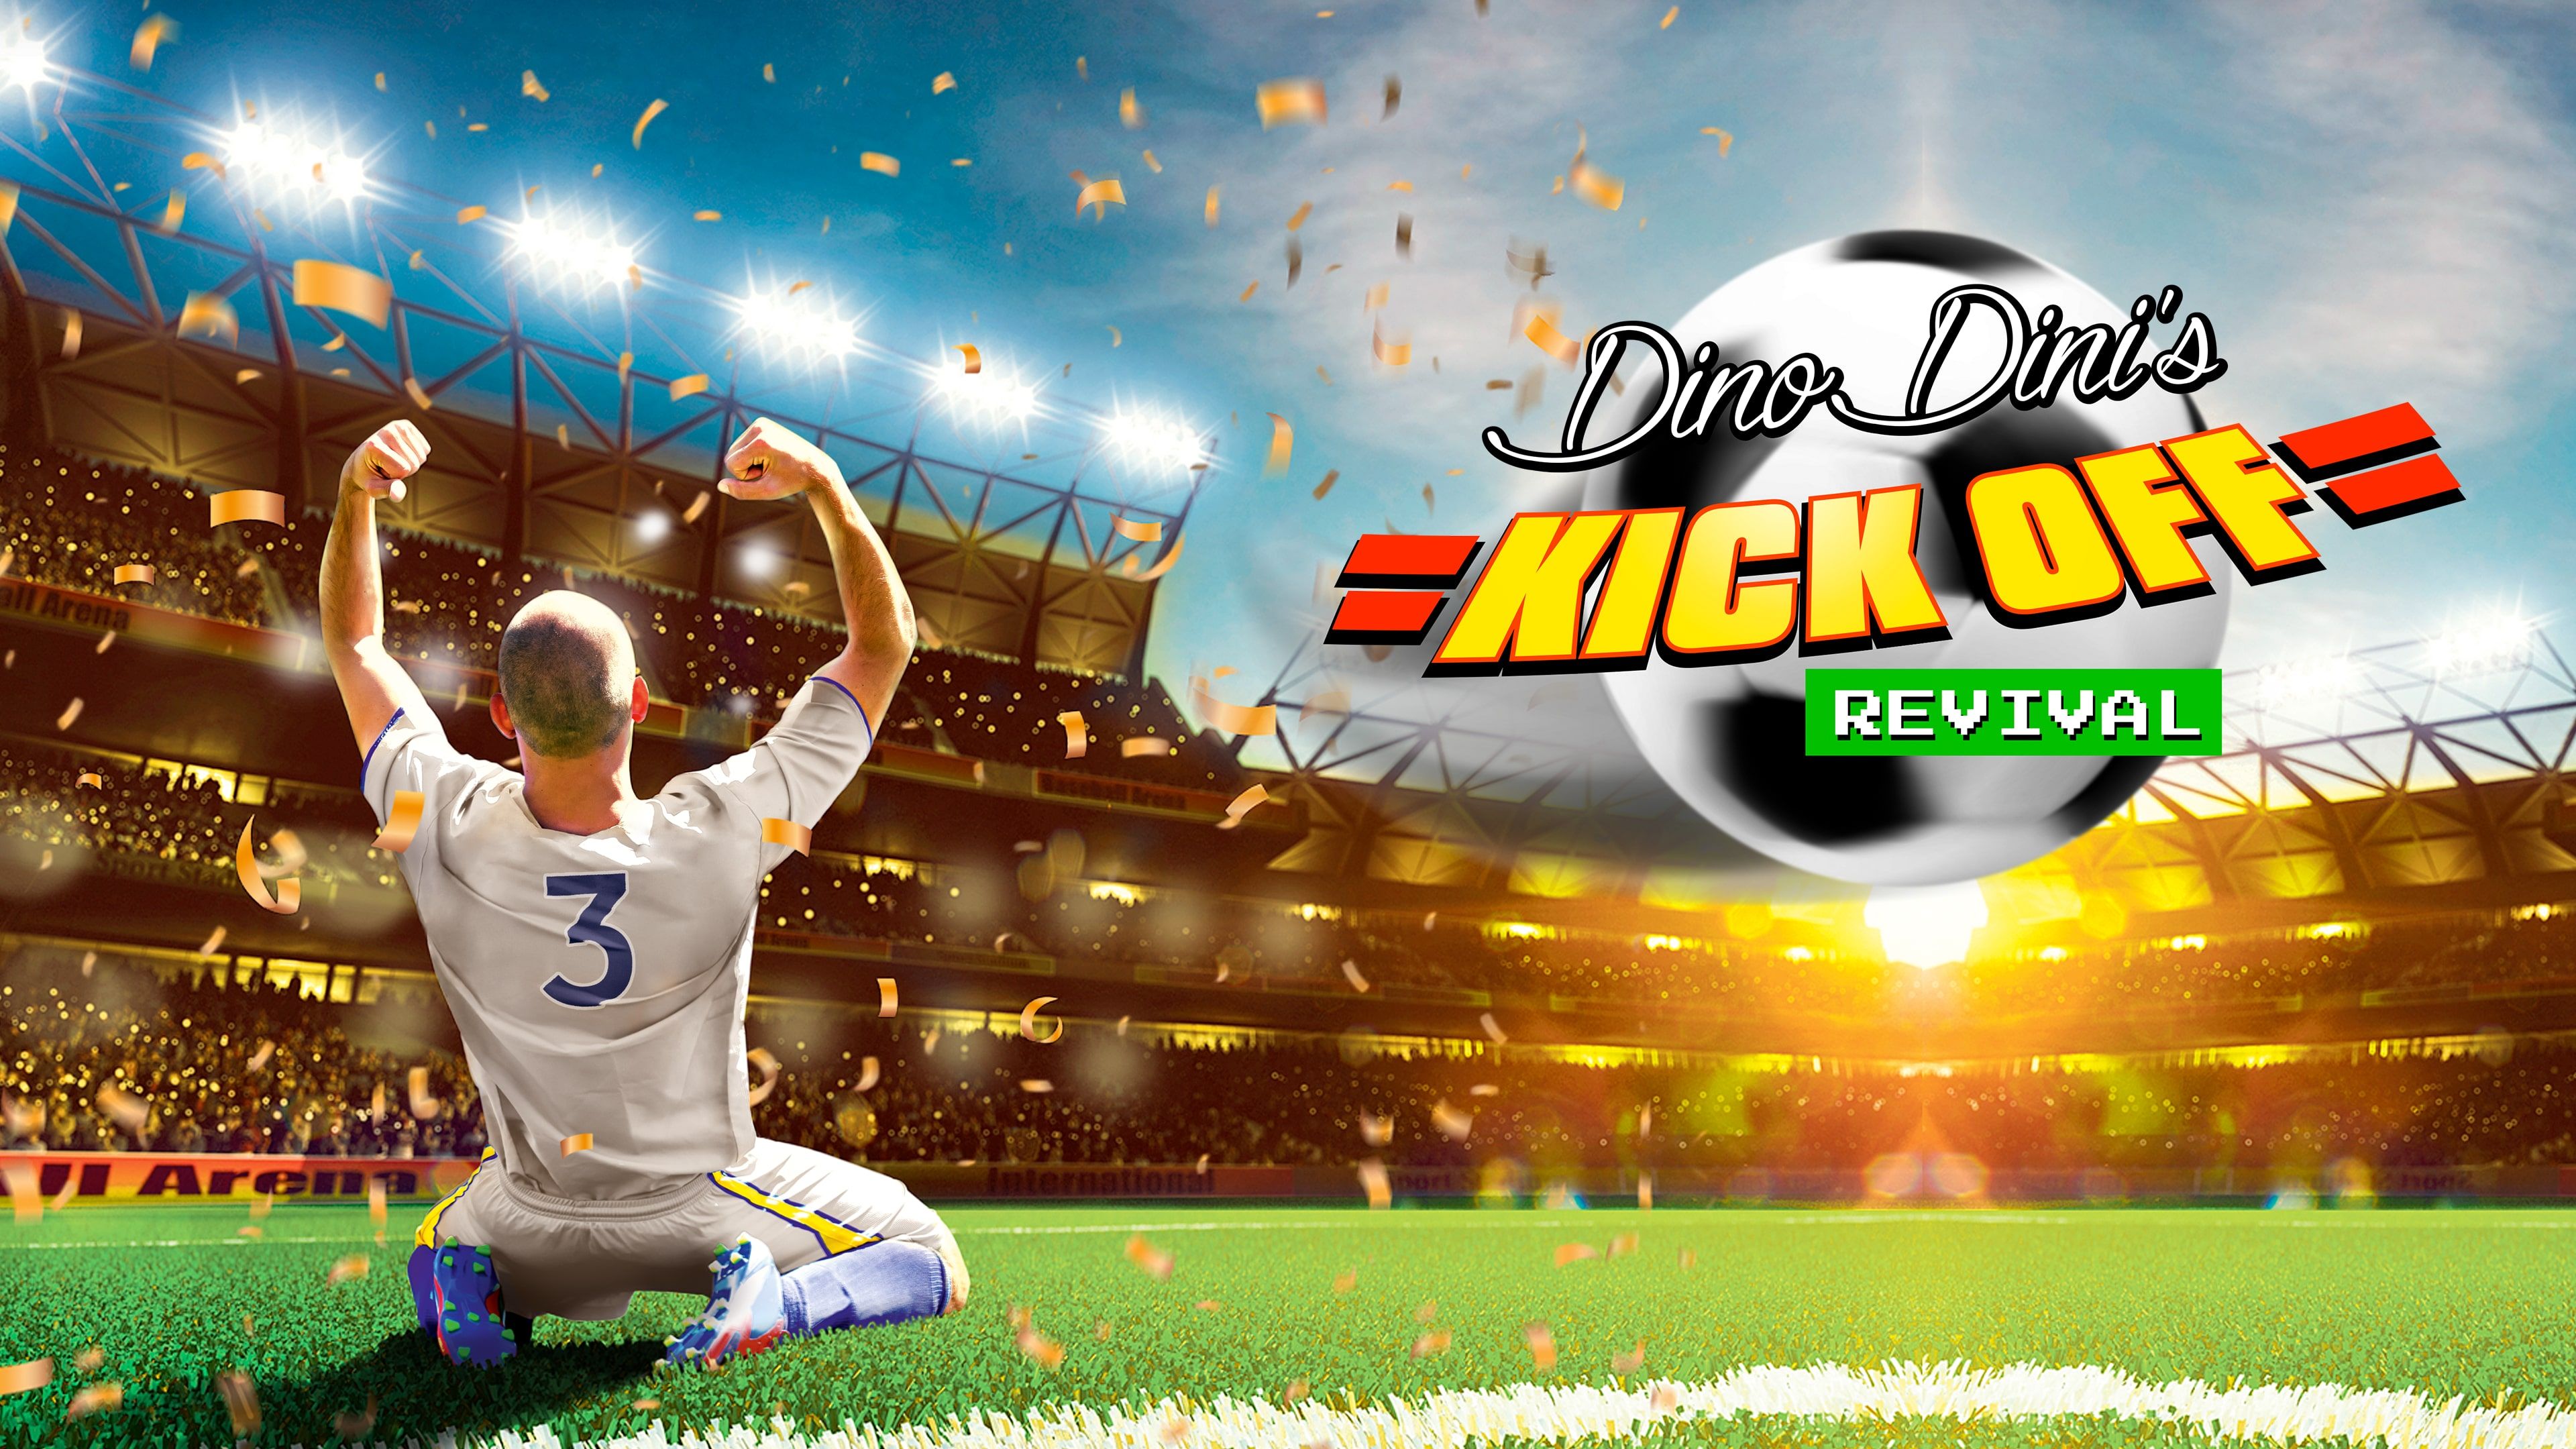 Dino Dini's Kick Off Revival cover image